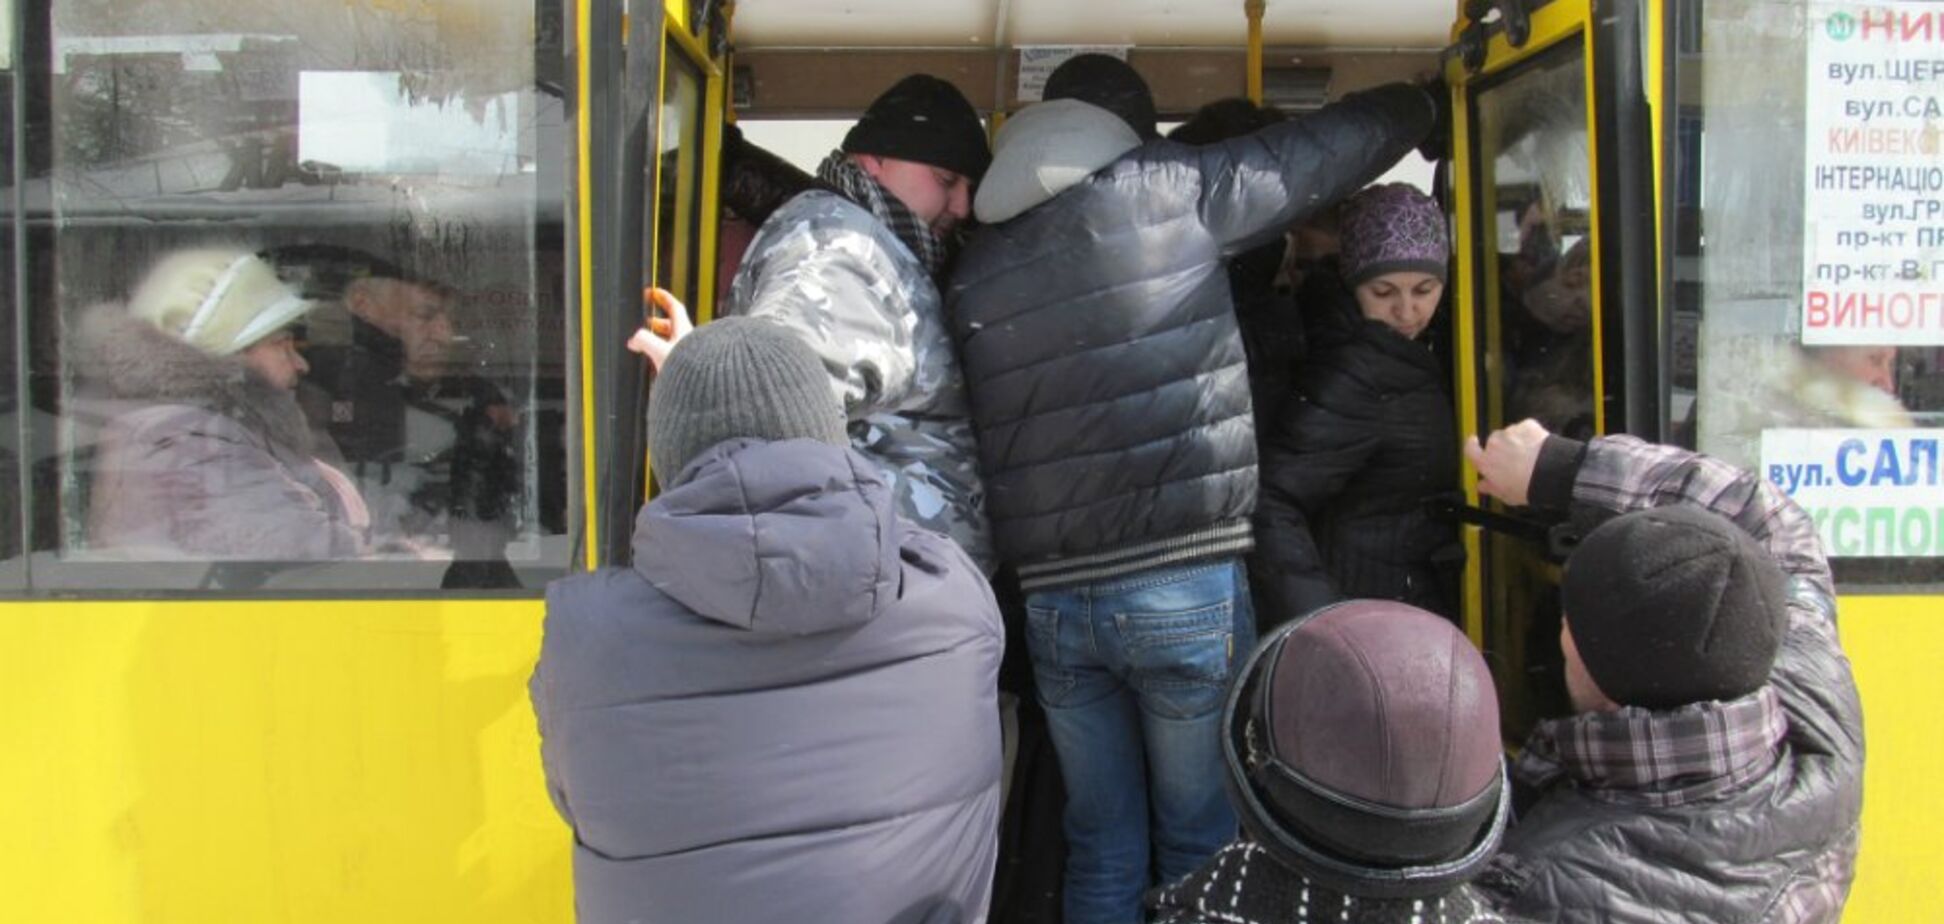 Никакой попсы и шансона: в Киеве жители сделали неожиданное предложение чиновникам